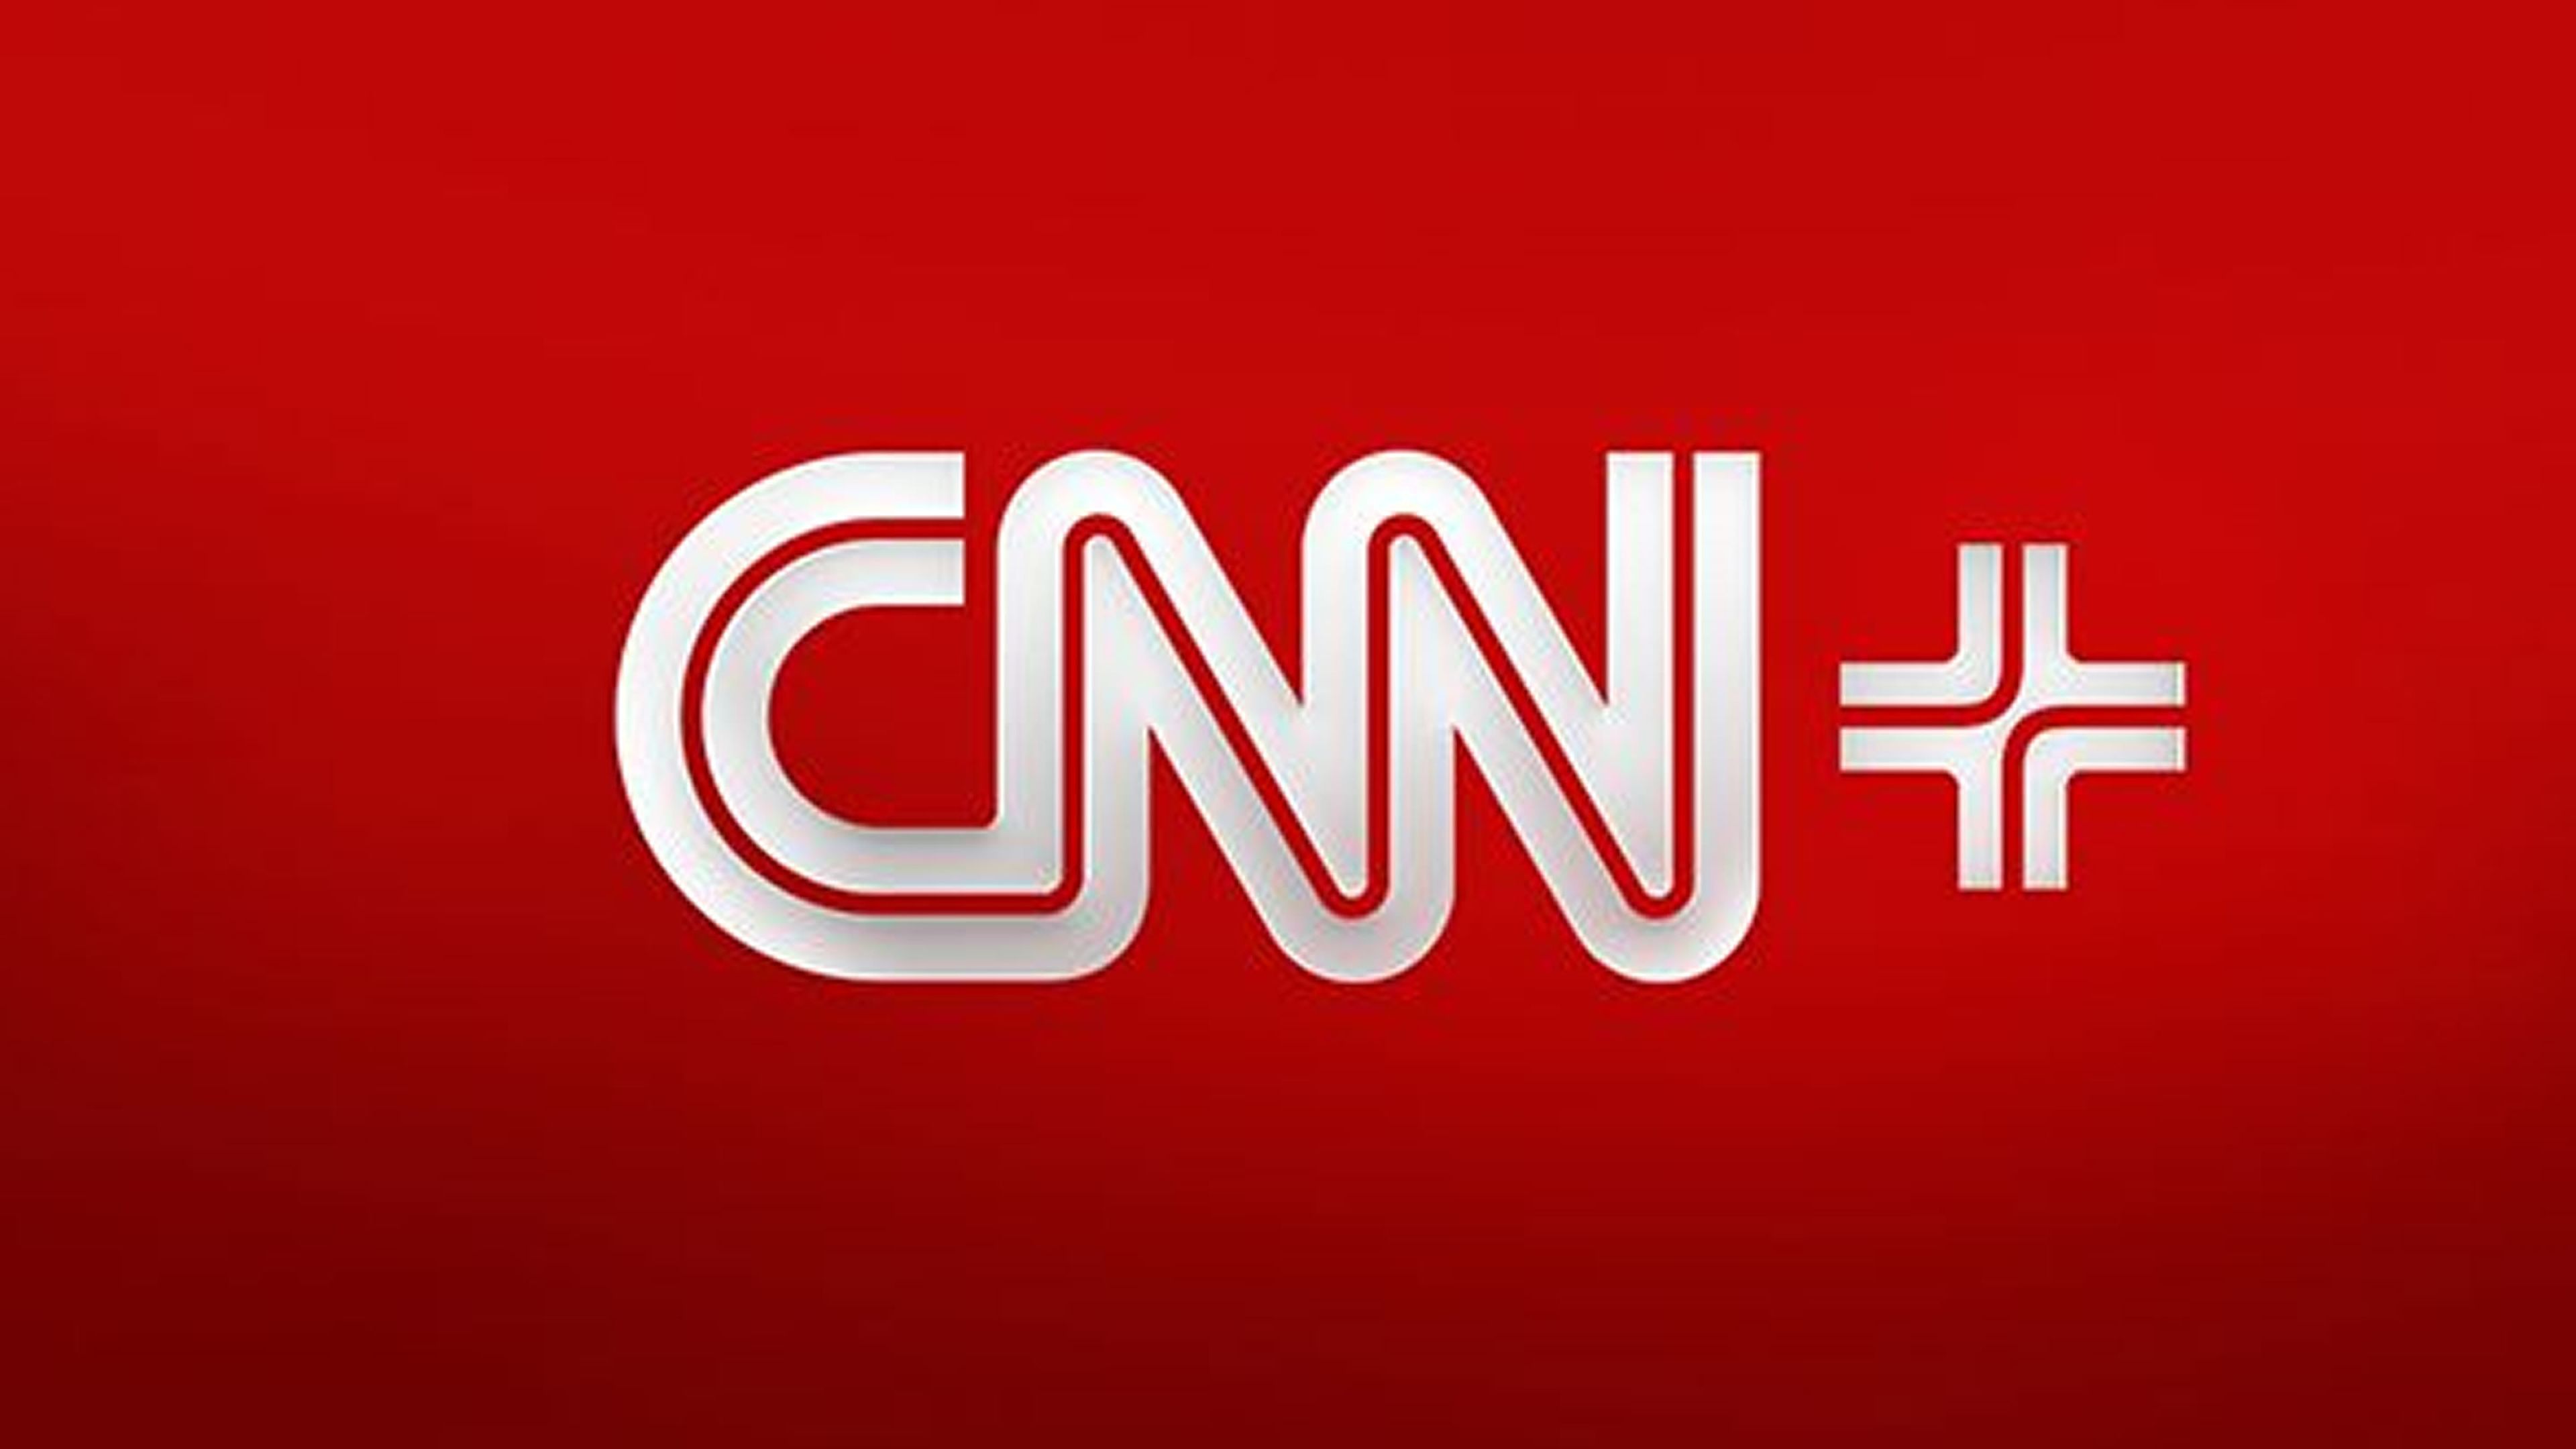 Cnn live. CNN. CNN логотип. Логотип СИЭНЭН. СМИ СНН.